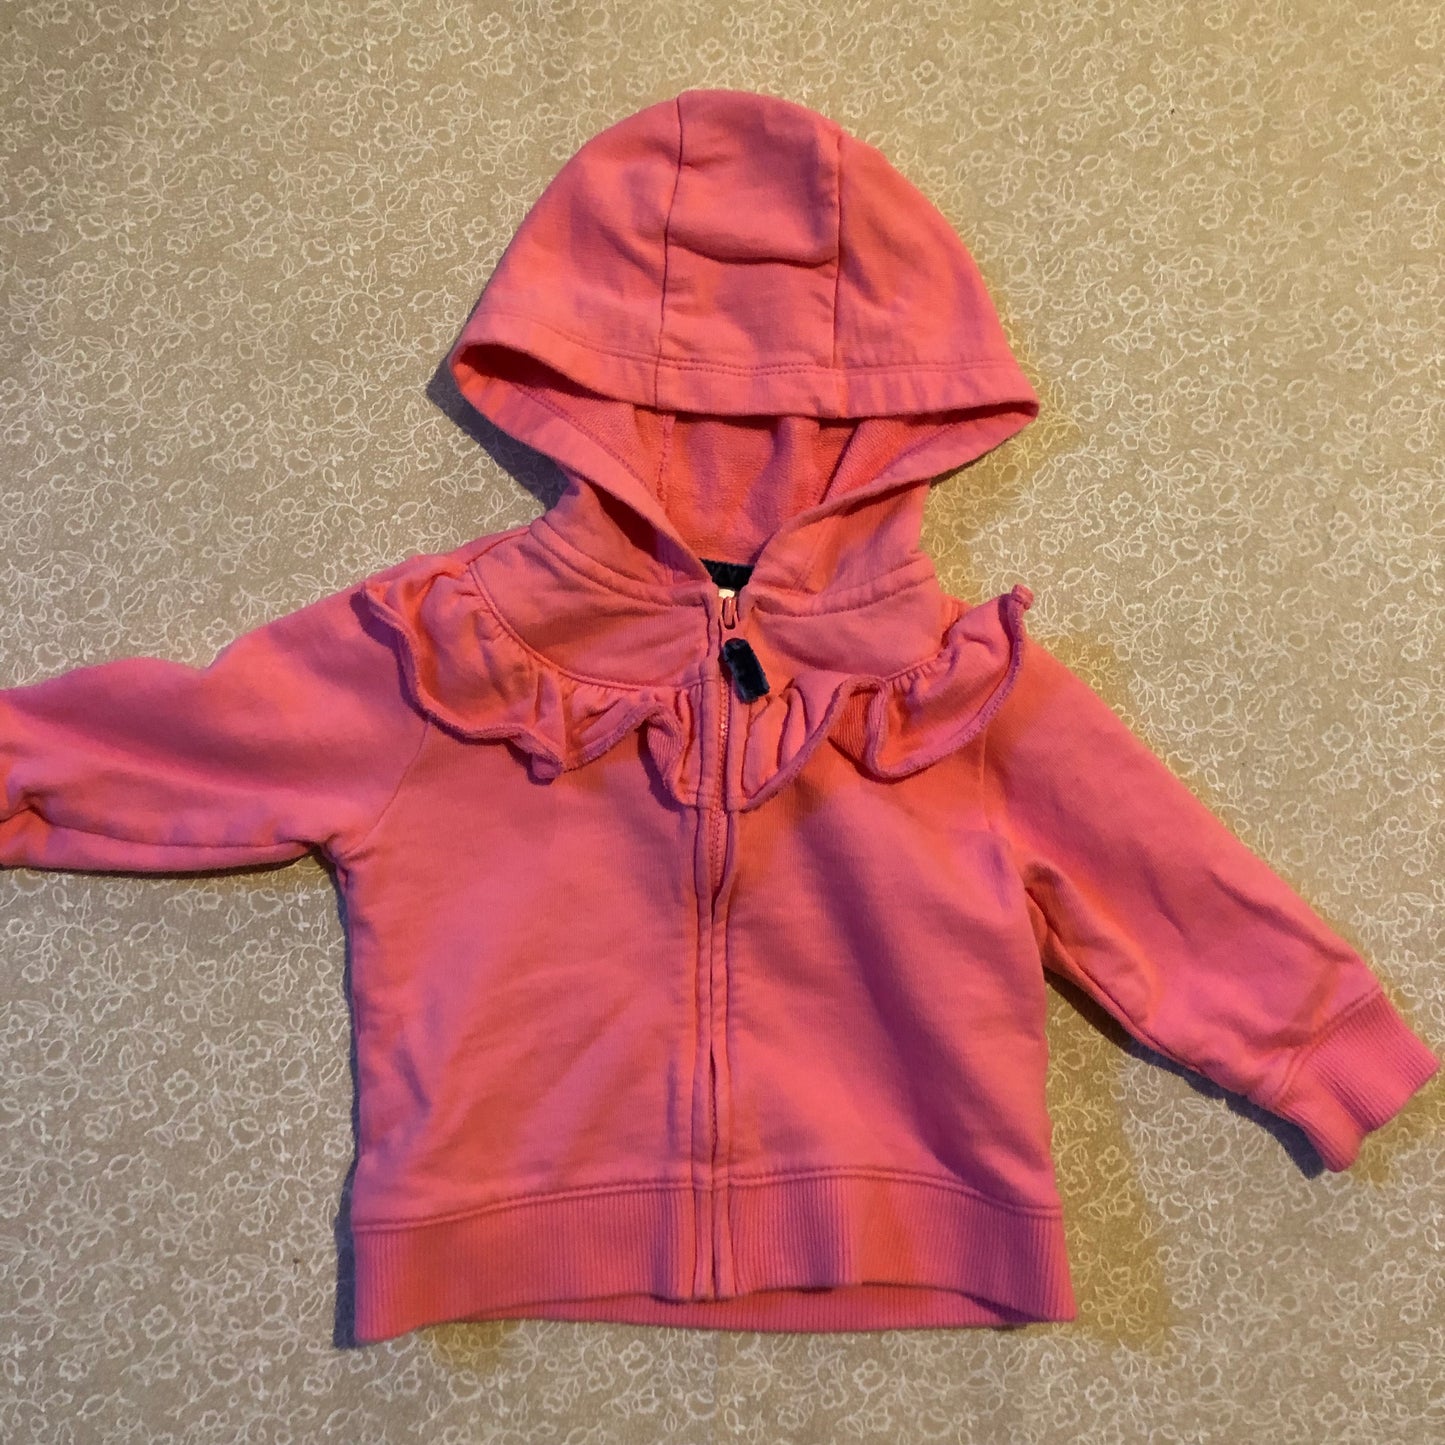 6-months-sweater-carters-pink-zipper